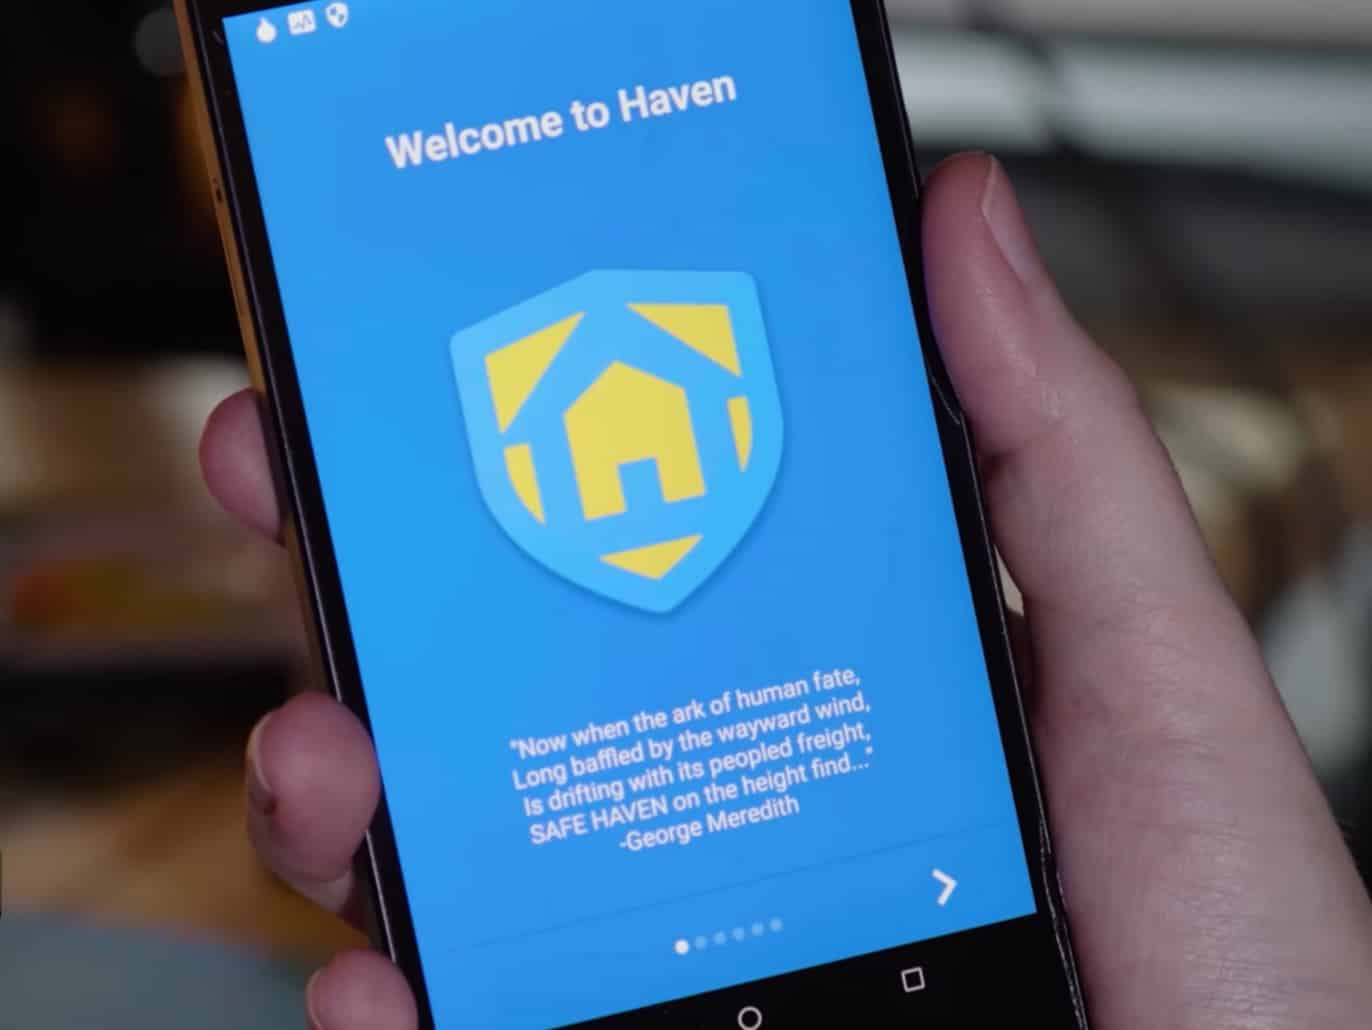 Edward Snowden ra app Haven biến điện thoại Android thành hệ thống giám sát